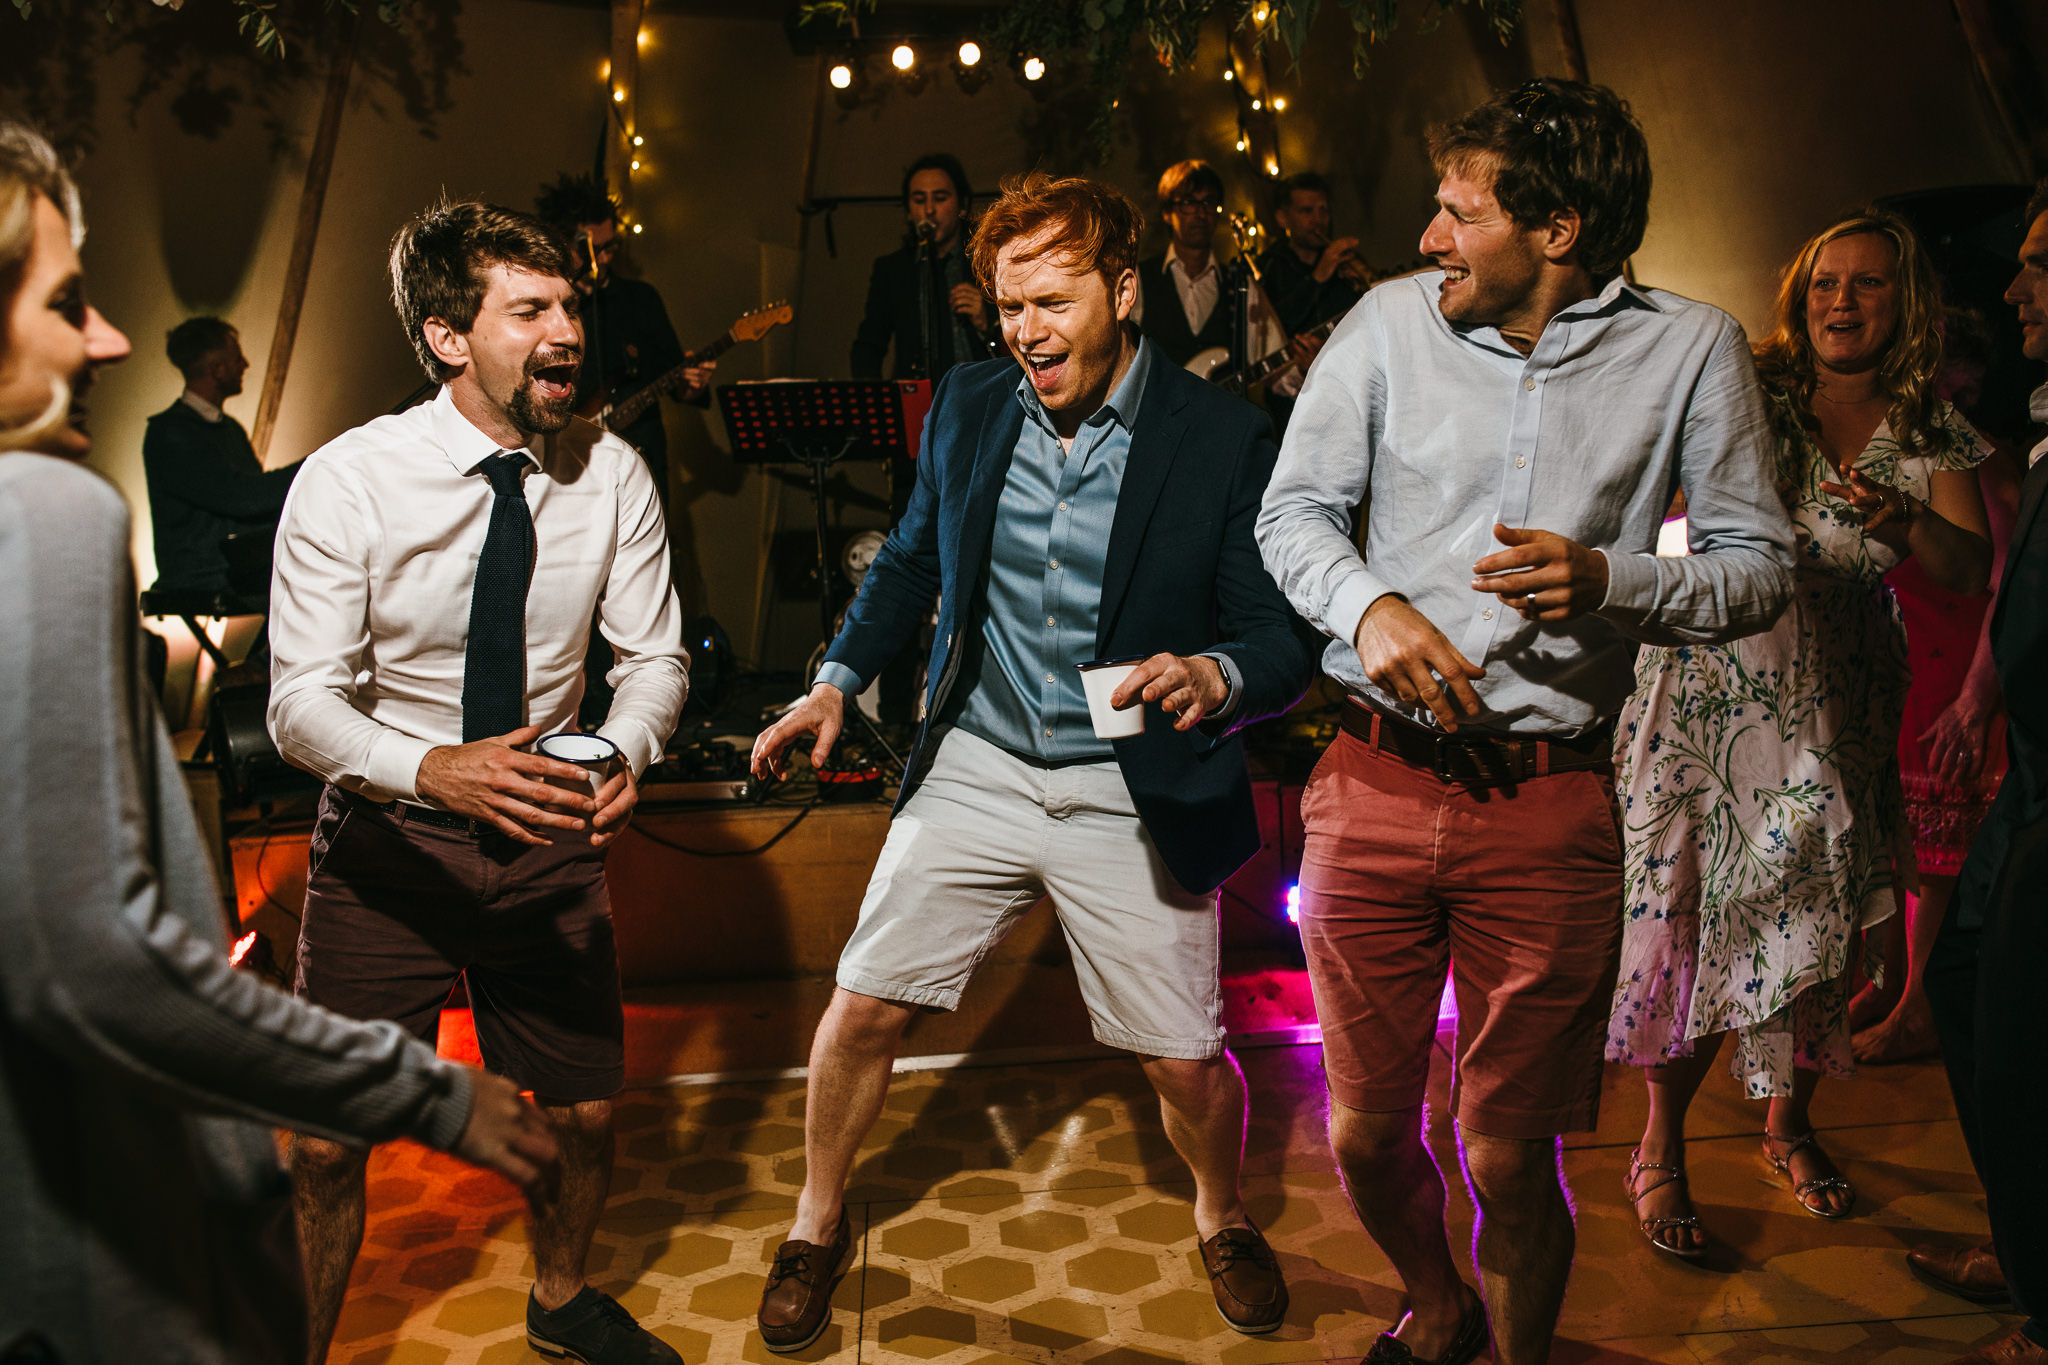 Guests dancing at wedding 